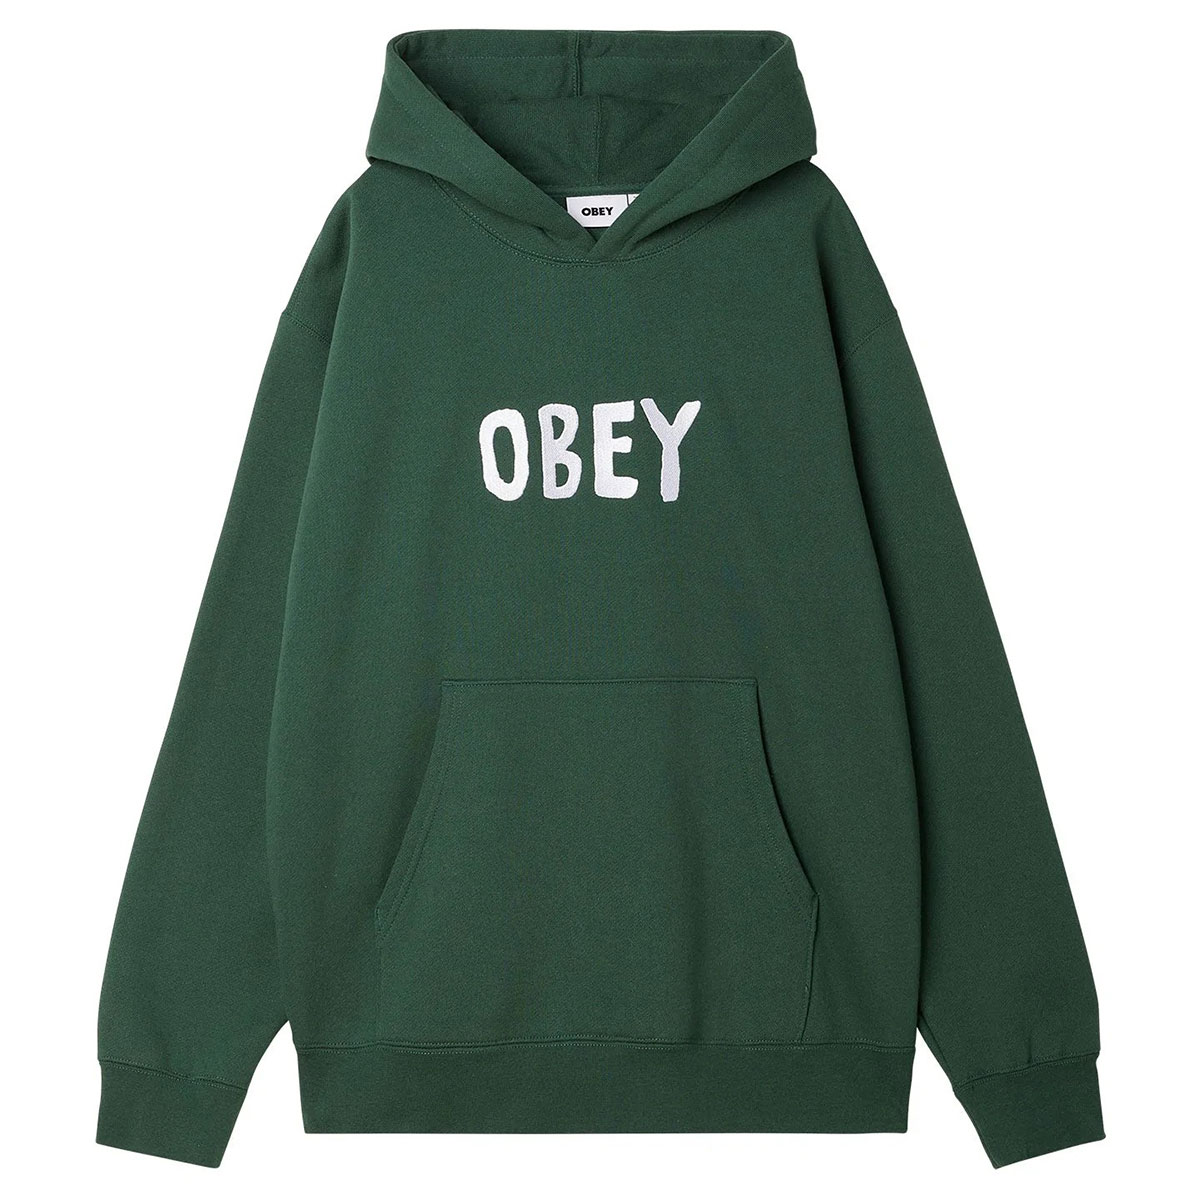 Obey hoodie - OG Type dark cedar